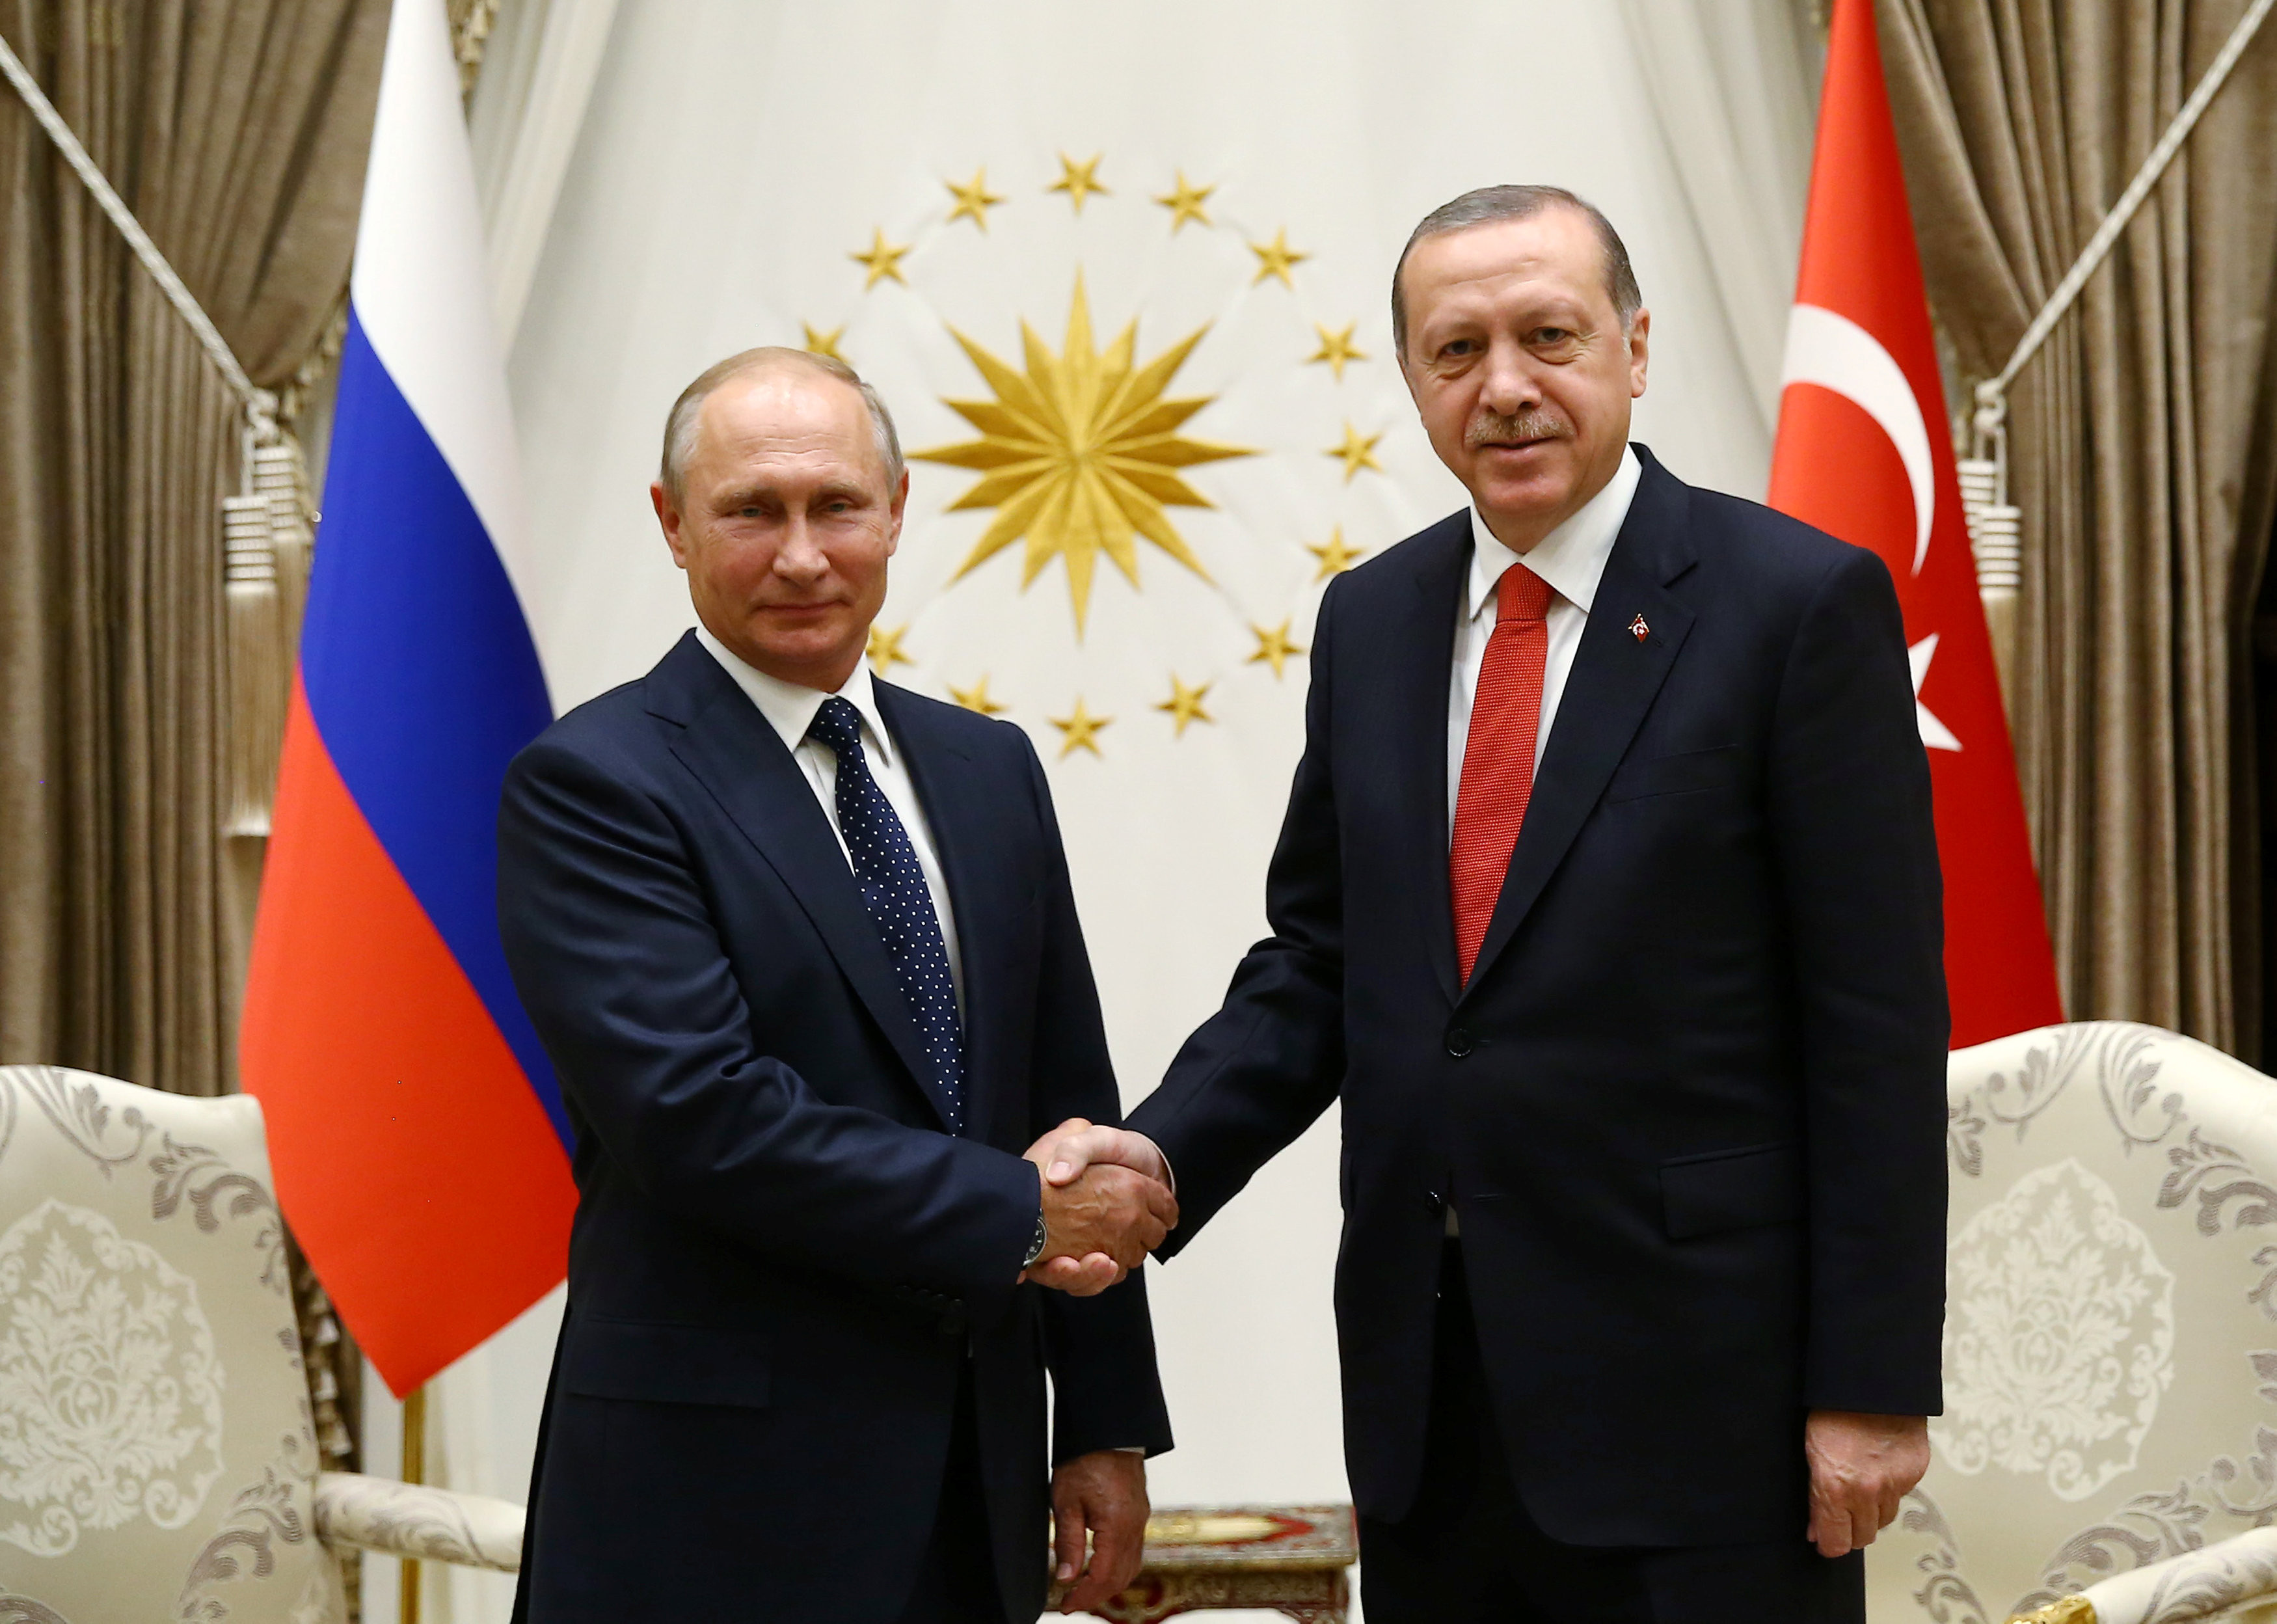 Владимир Путин и Реджеп Эрдоган на встрече в президентском дворце в Анкаре 28 сентября 2017 года. Фото: &copy;&nbsp;Kayhan Ozer/Presidential Palace/REUTERS